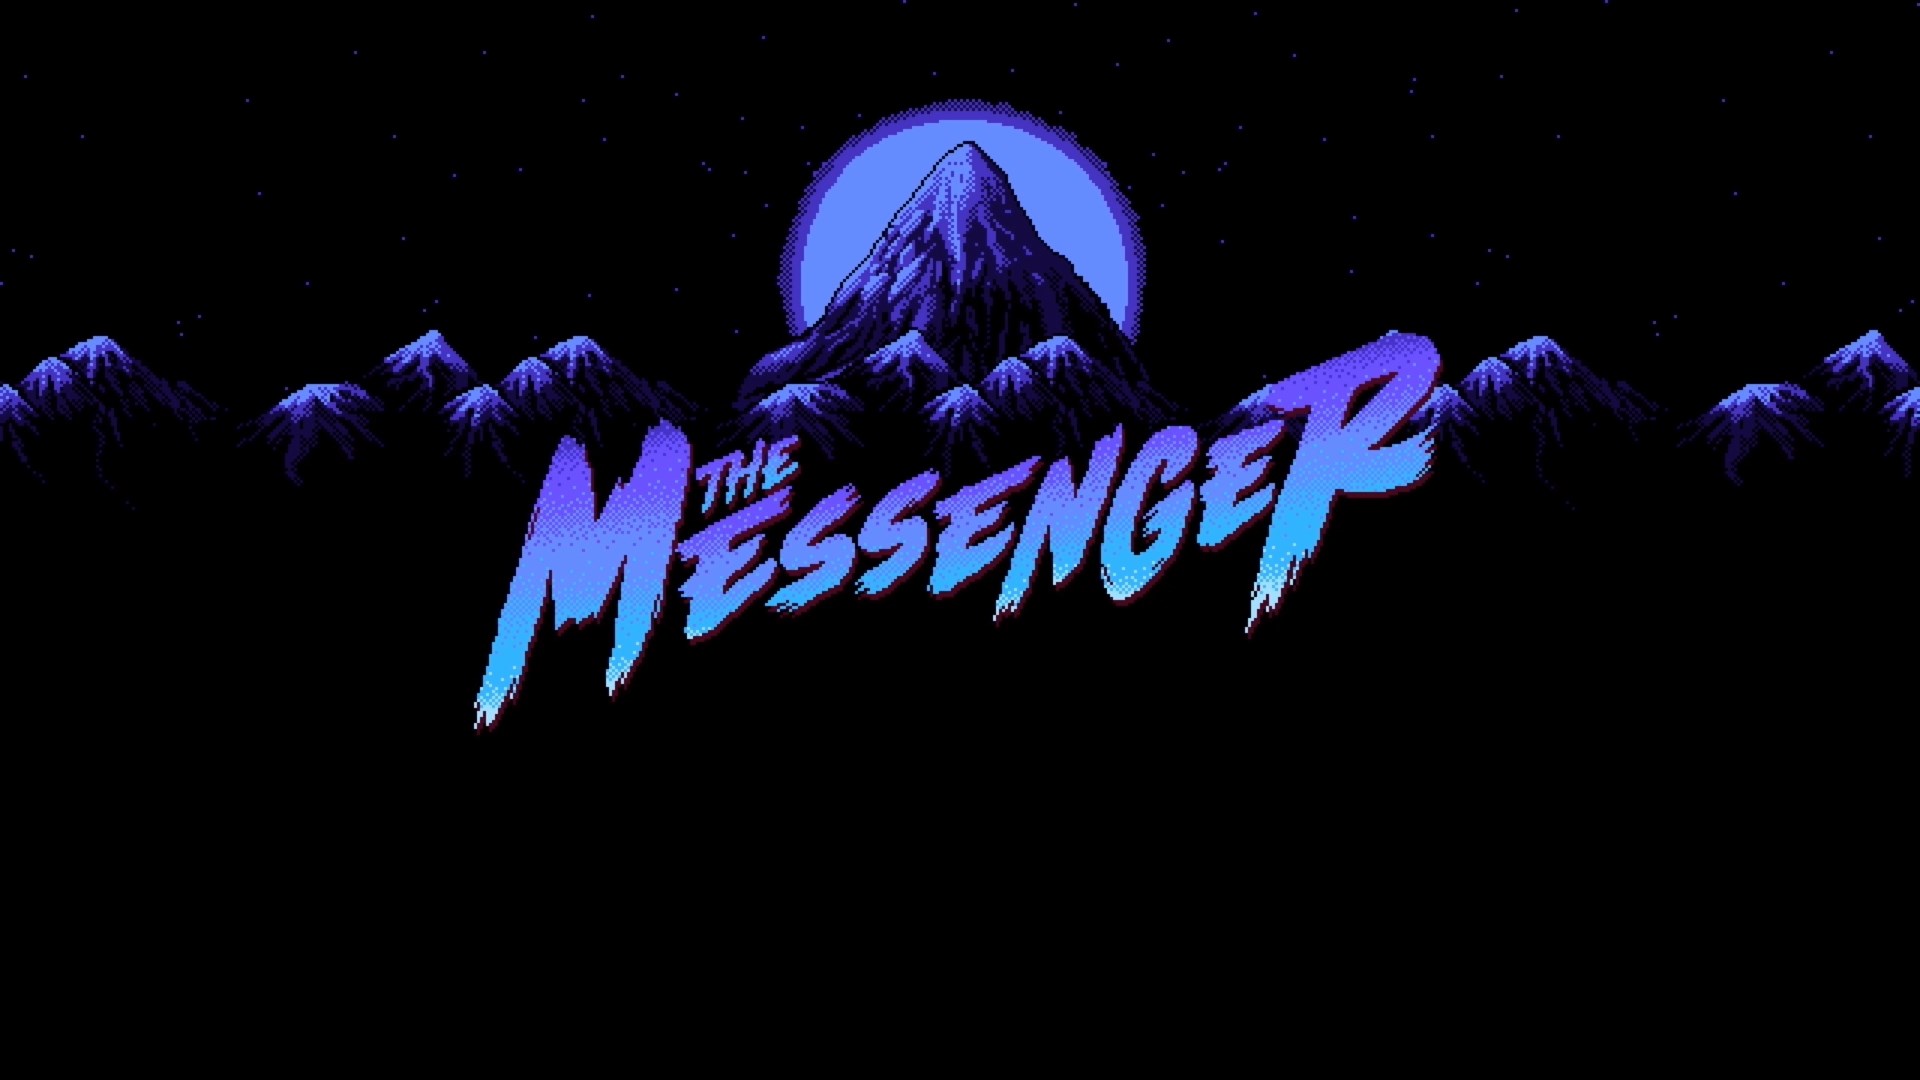 The messenger игра. The Messenger игра Switch. The Messenger арт. The Messenger (2018).